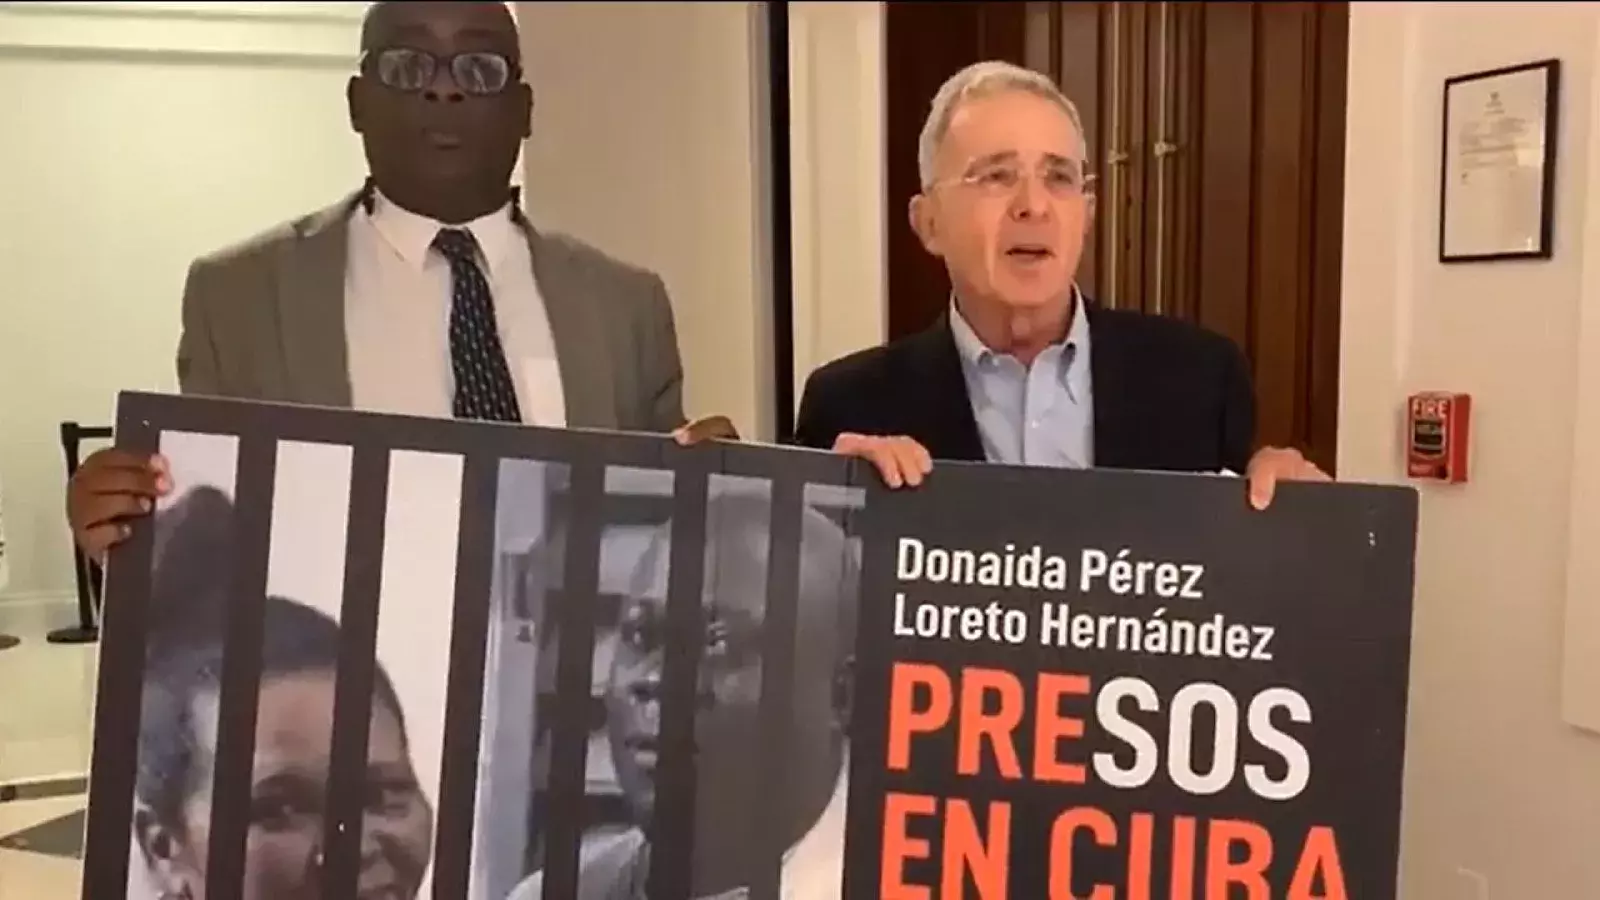 El expresidente Álvaro Uribe se pronuncia a favor de presos políticos cubanos